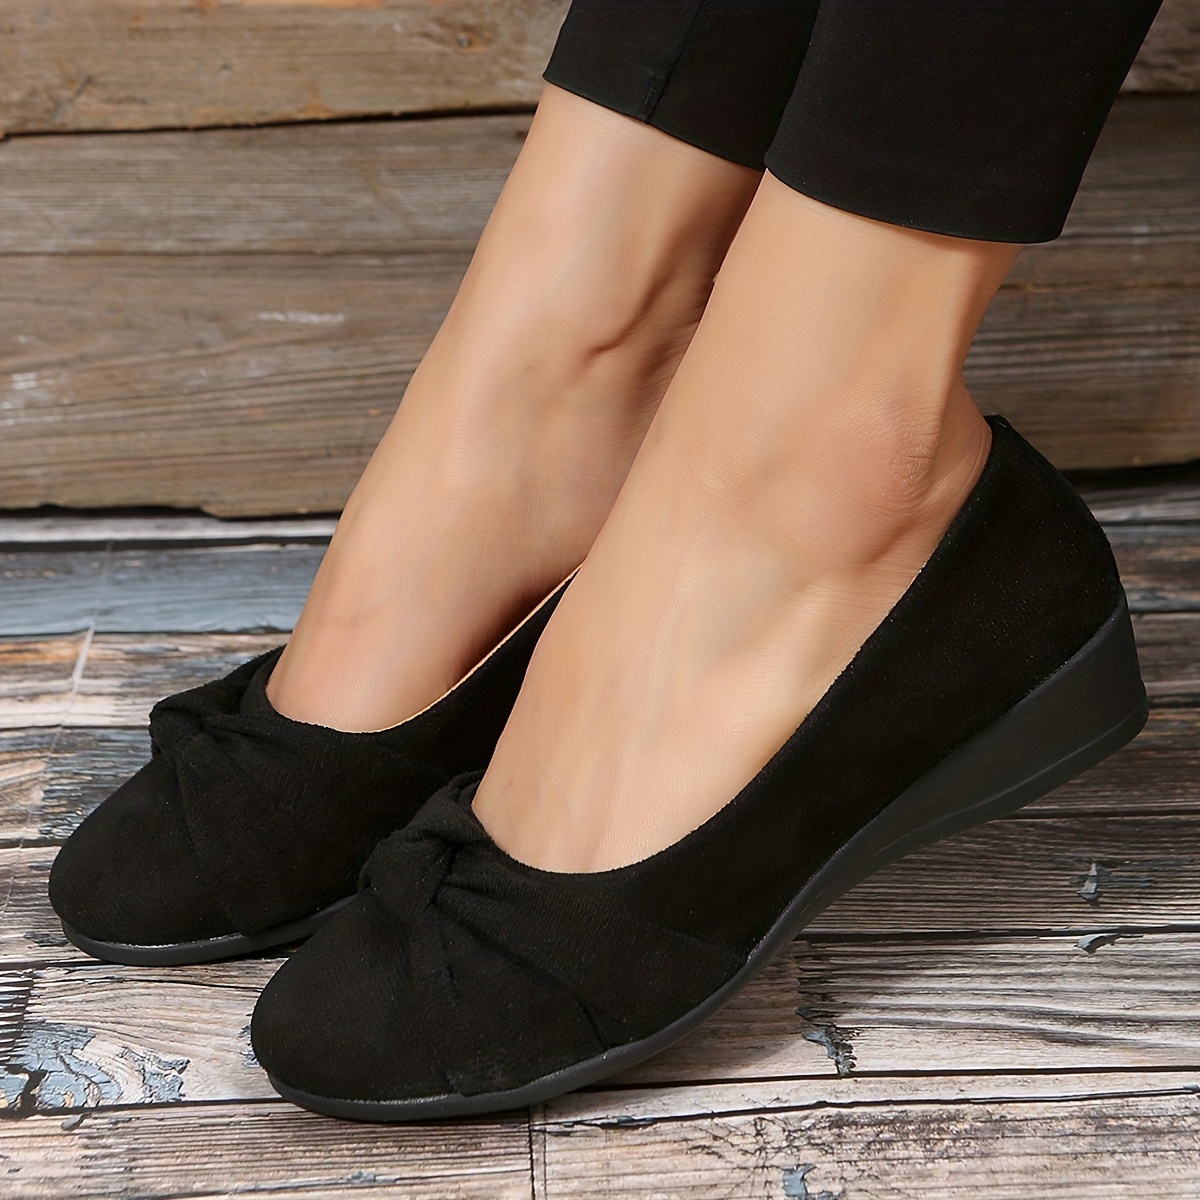 Deportivos vestir negros mujer - Zapato cómodo mujer NOTTON